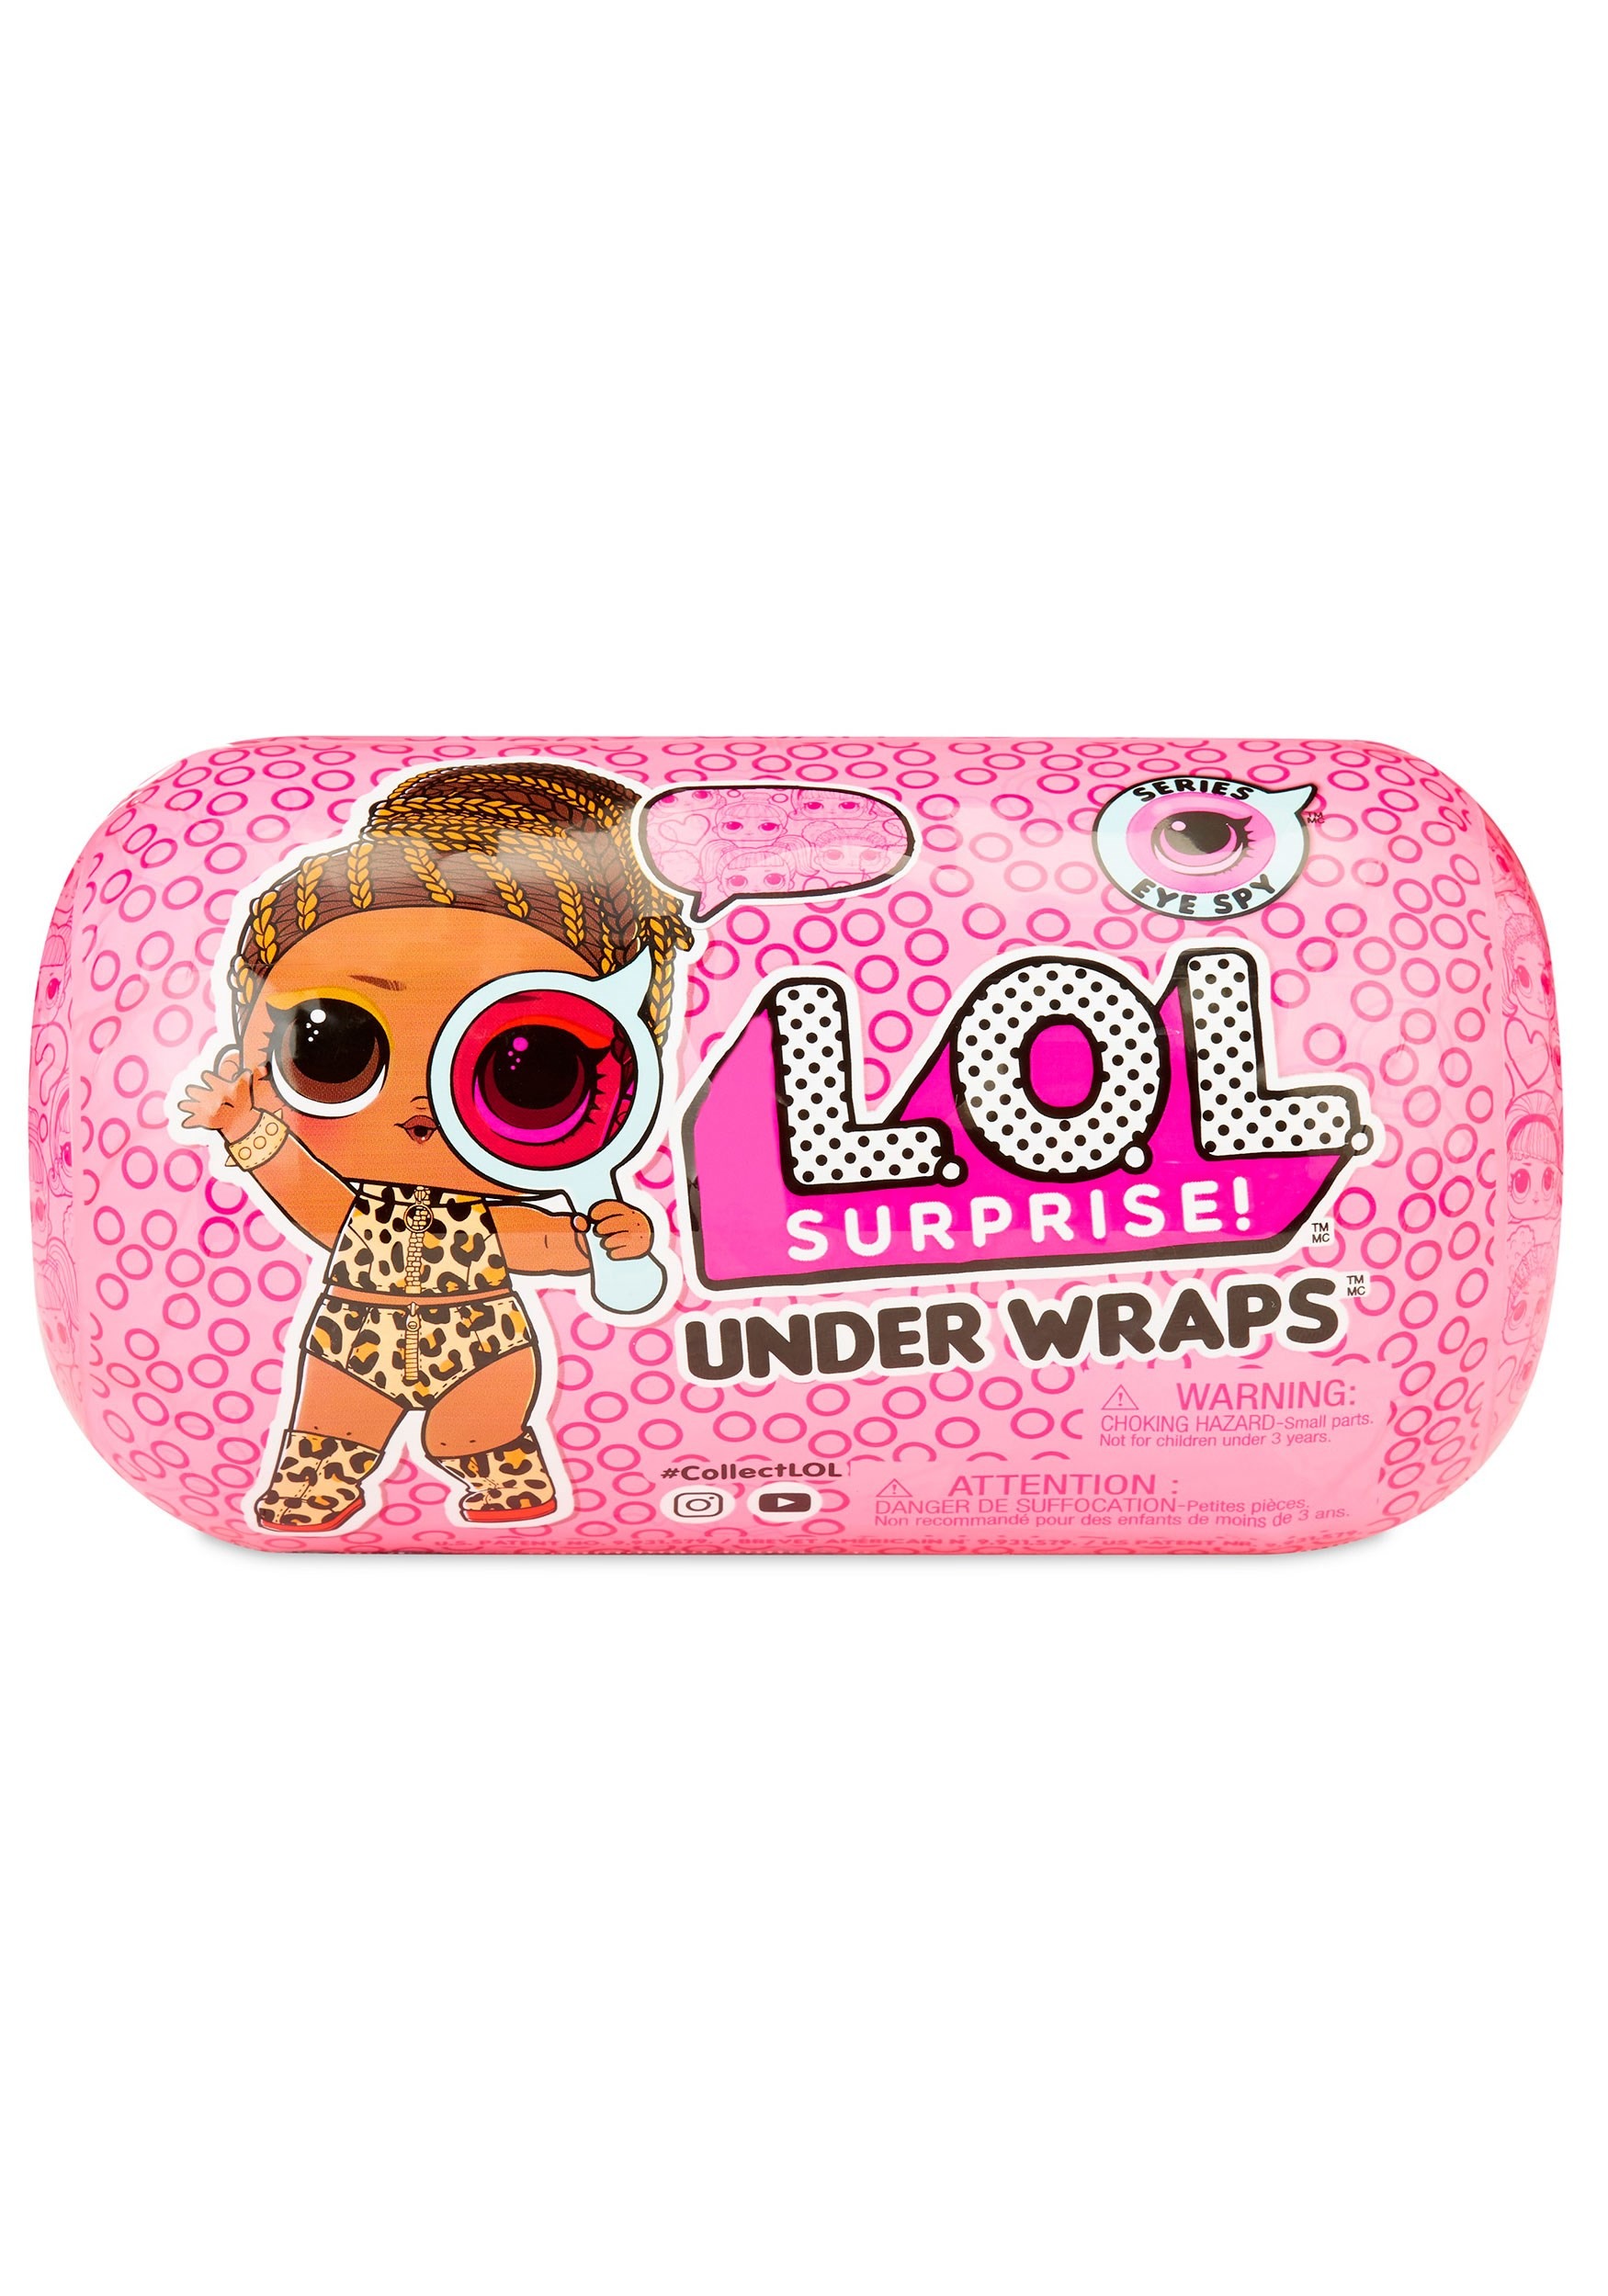 L.O.L. Surprise Under Wraps Doll Eye Spy Series